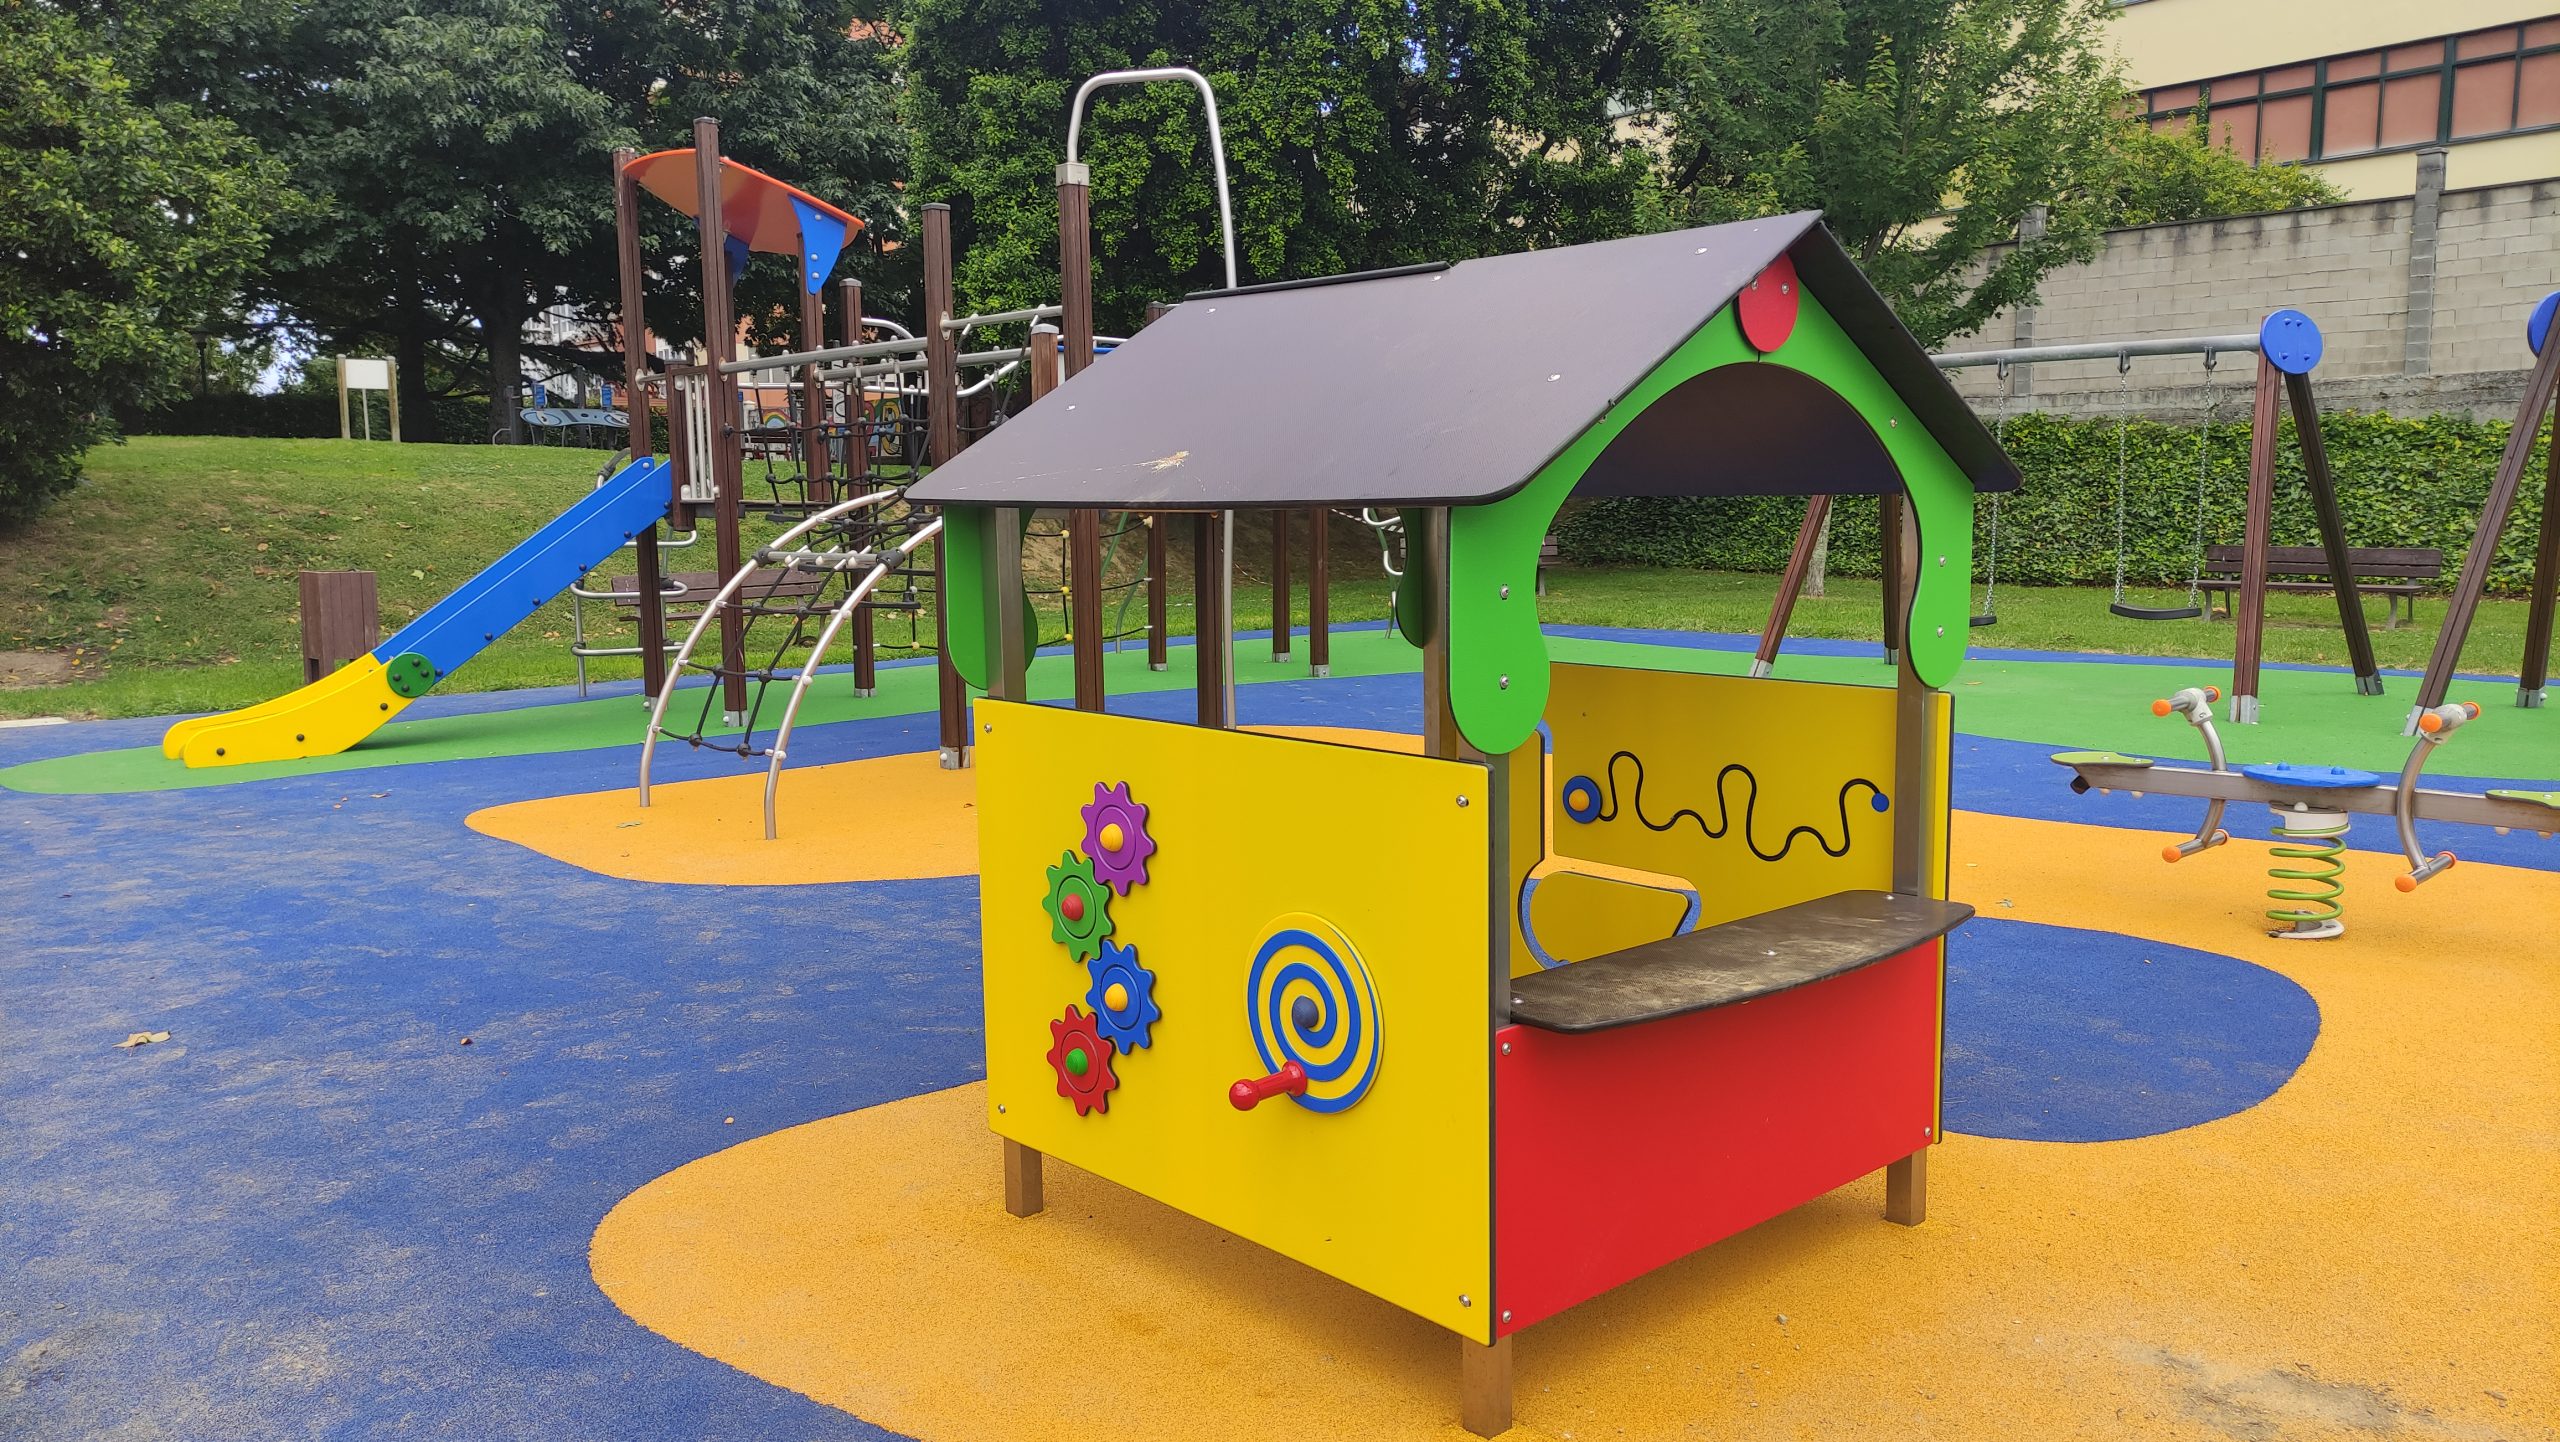 Renovado el parque infantil de la calle Juan de Austria en Caranza, A  Coruña - Parques Infantiles Inclusivos